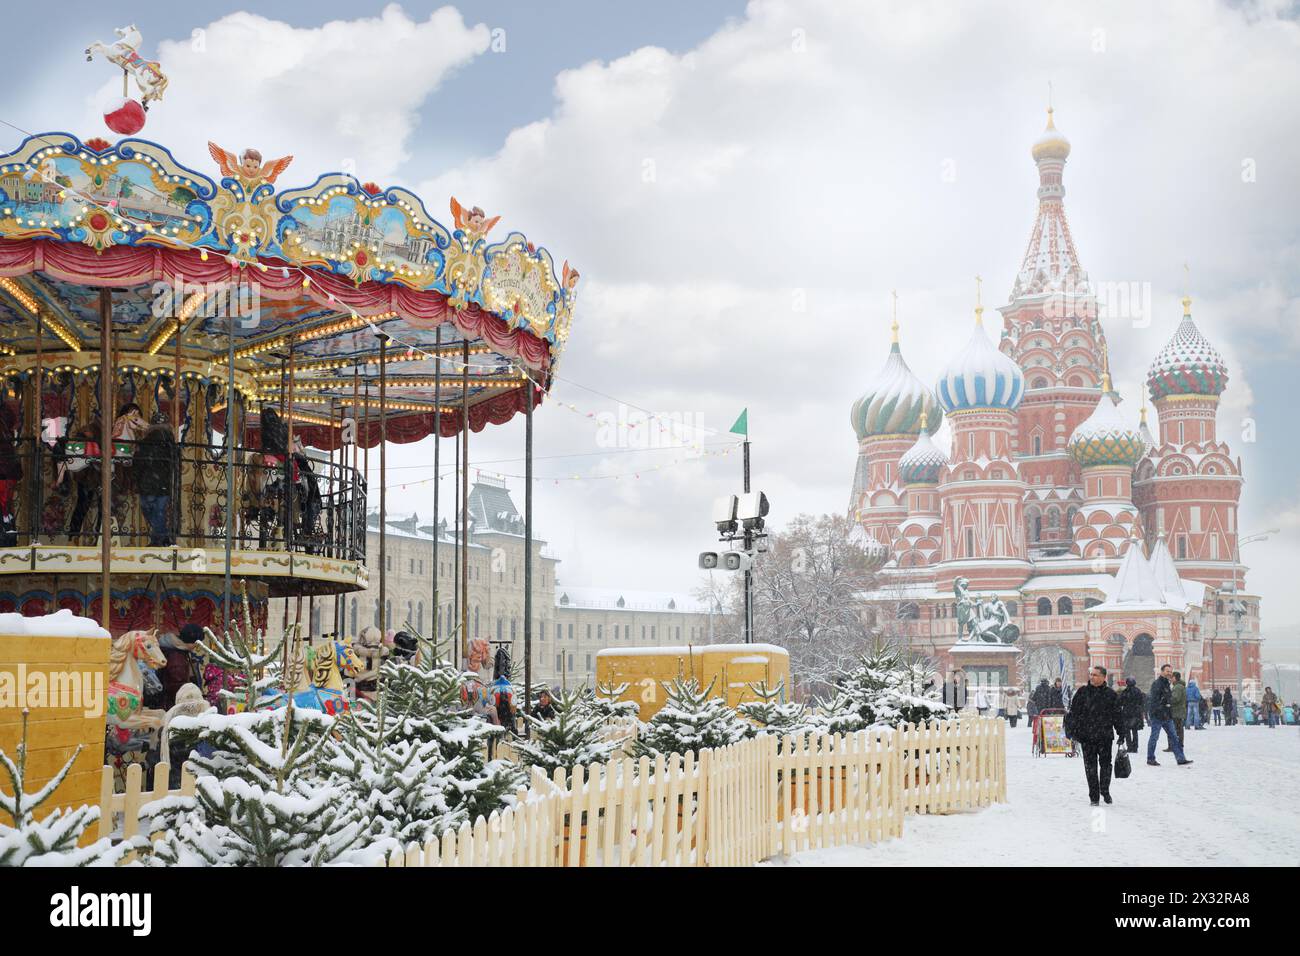 MOSCOU, RUSSIE - DEC 8, 2013 : Carrousel et préparé Basilic cathédrale pendant la foire de Noël (zone de foire est d'environ 2 mille mètres carrés). Banque D'Images